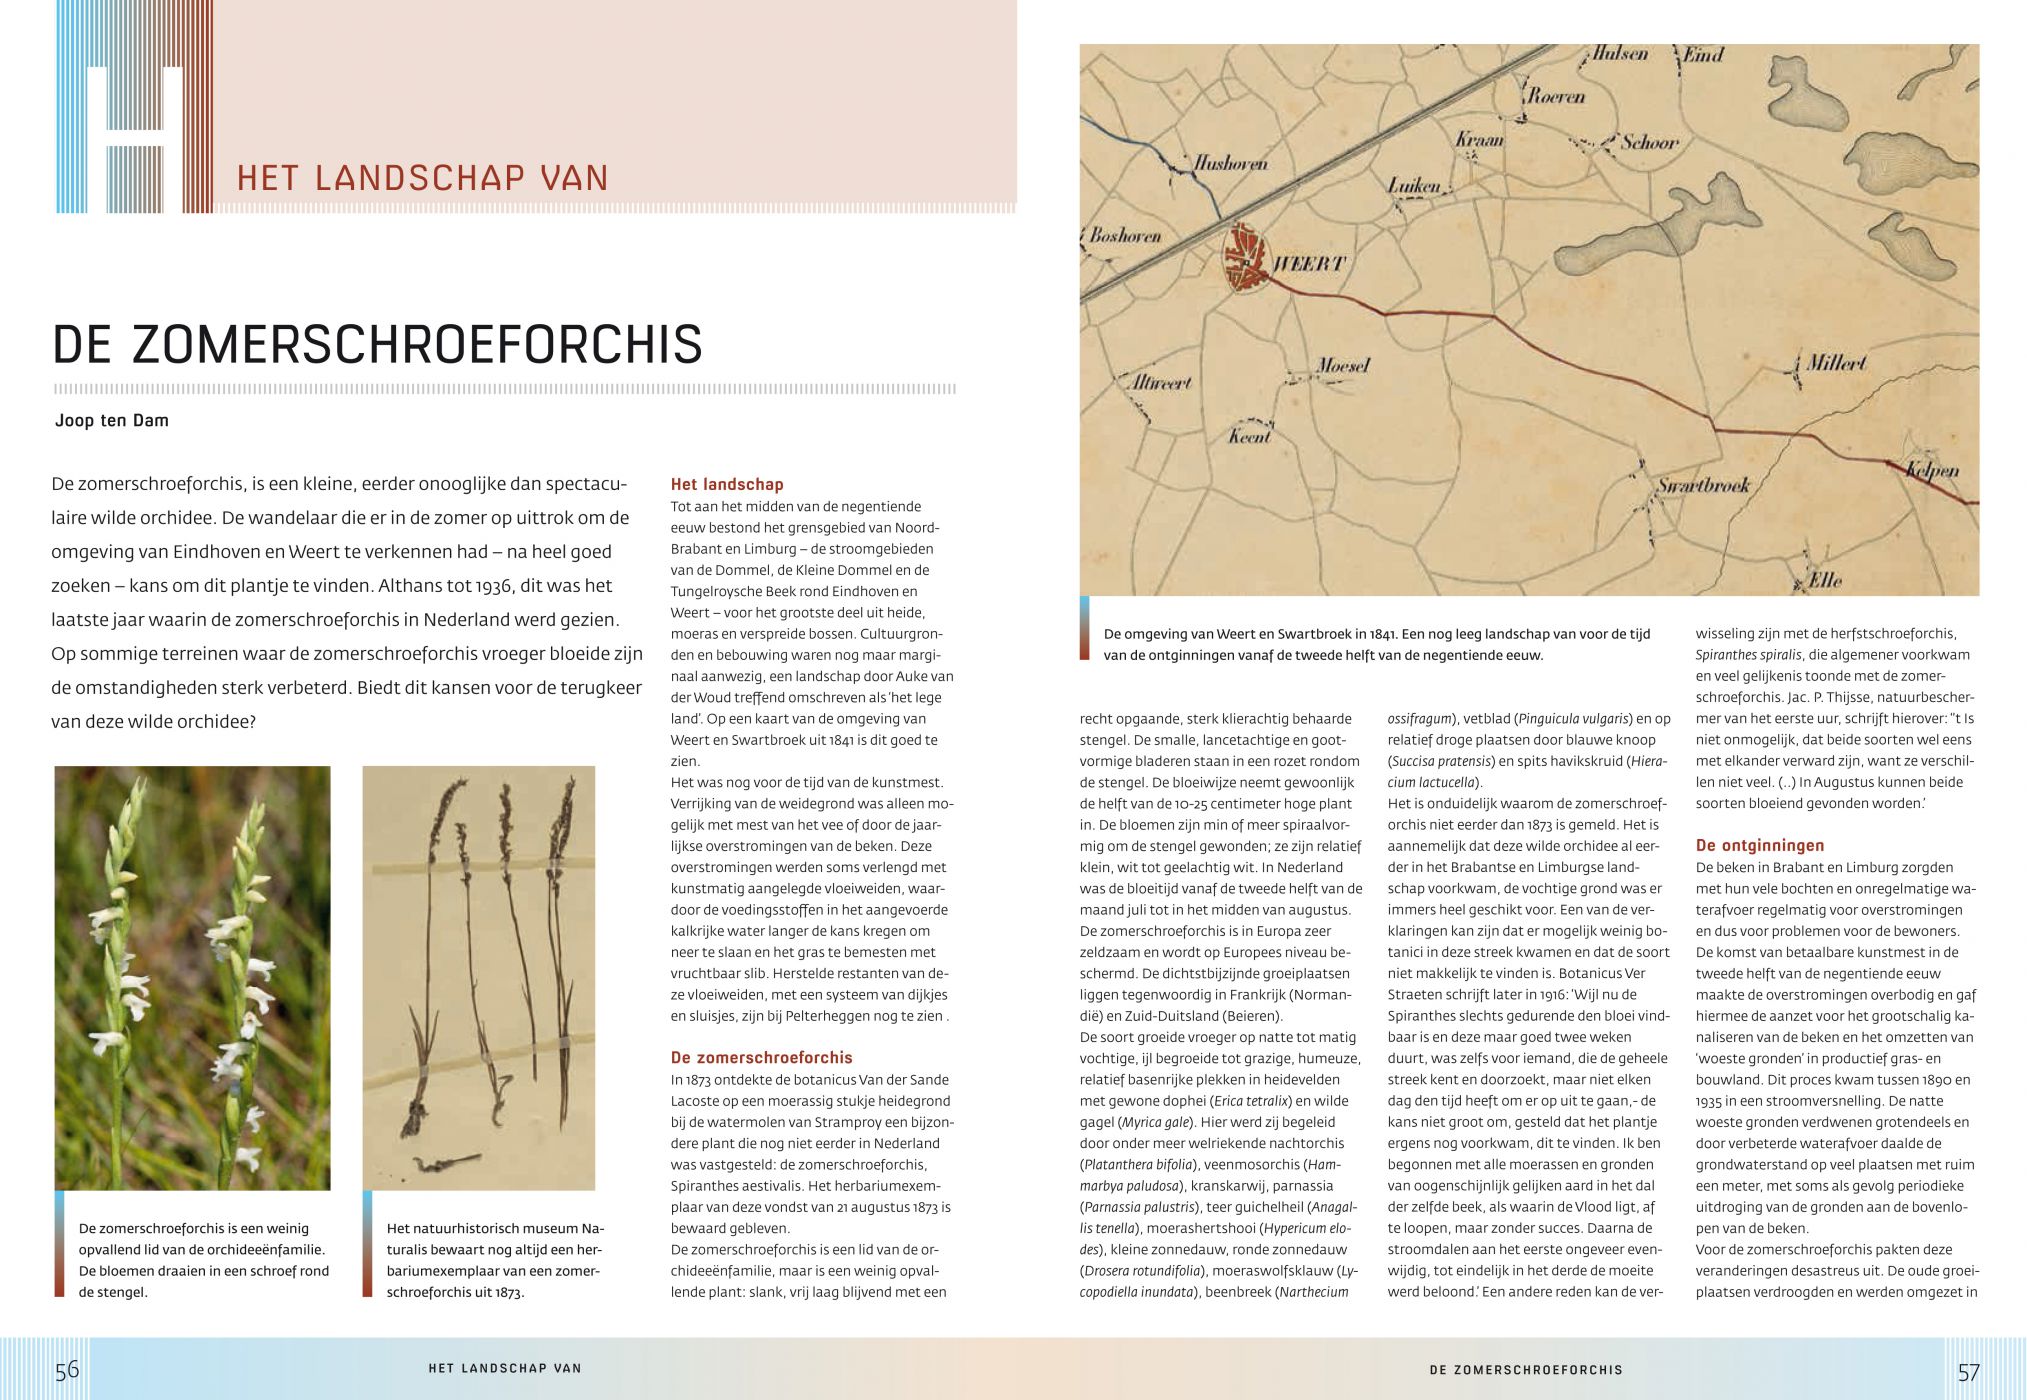 Inkijkexemplaar van het boek: <em>Het Nederlands Landschap</em> - © Uitgeverij Matrijs